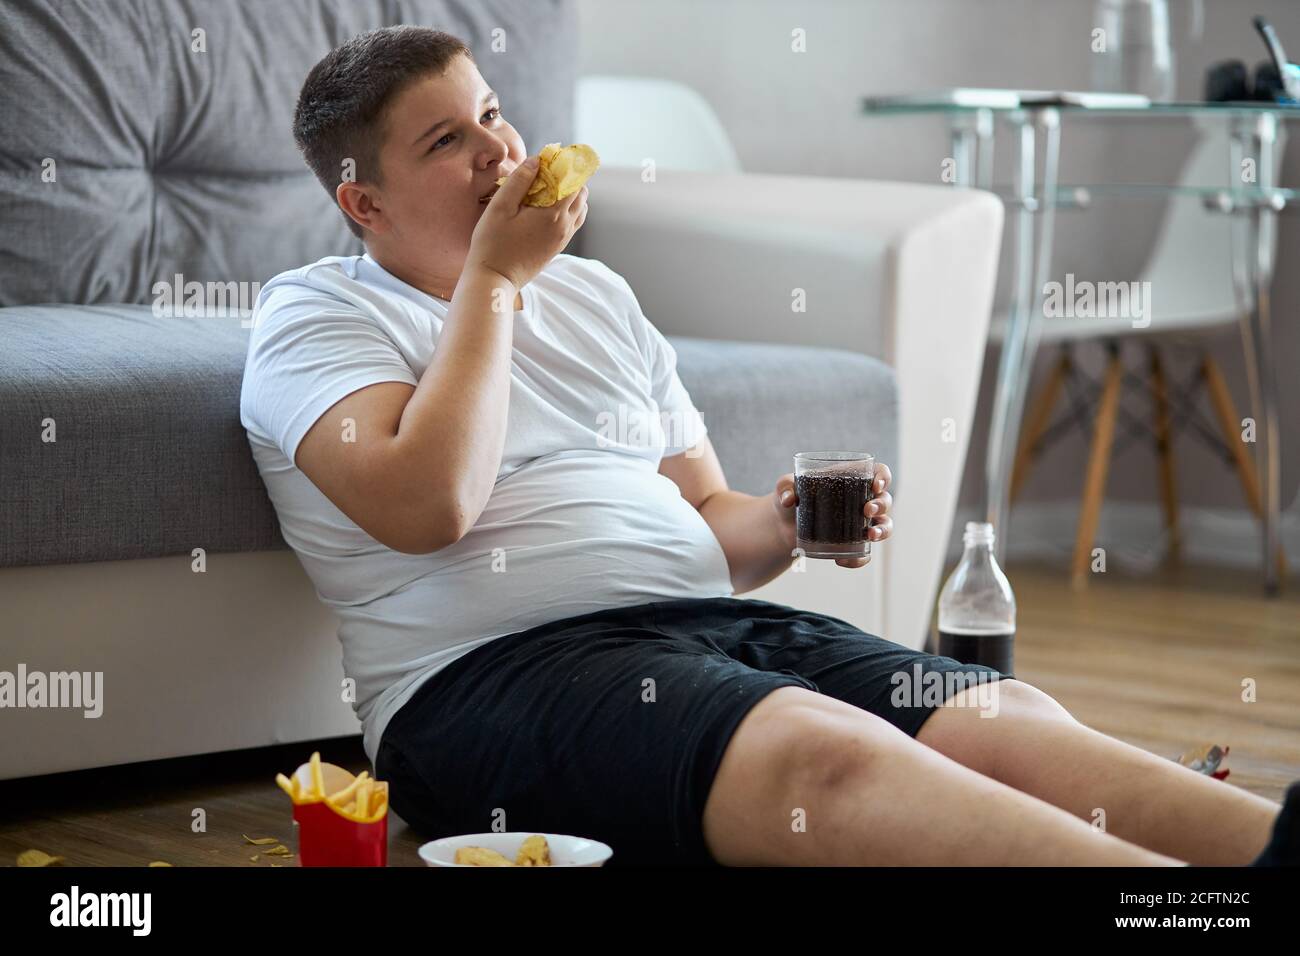 gras un adolescent en surpoids a une mauvaise nutrition, manger des aliments malsains. asseyez-vous sur le sol en mangeant de la malbouffe et en regardant la télévision Banque D'Images